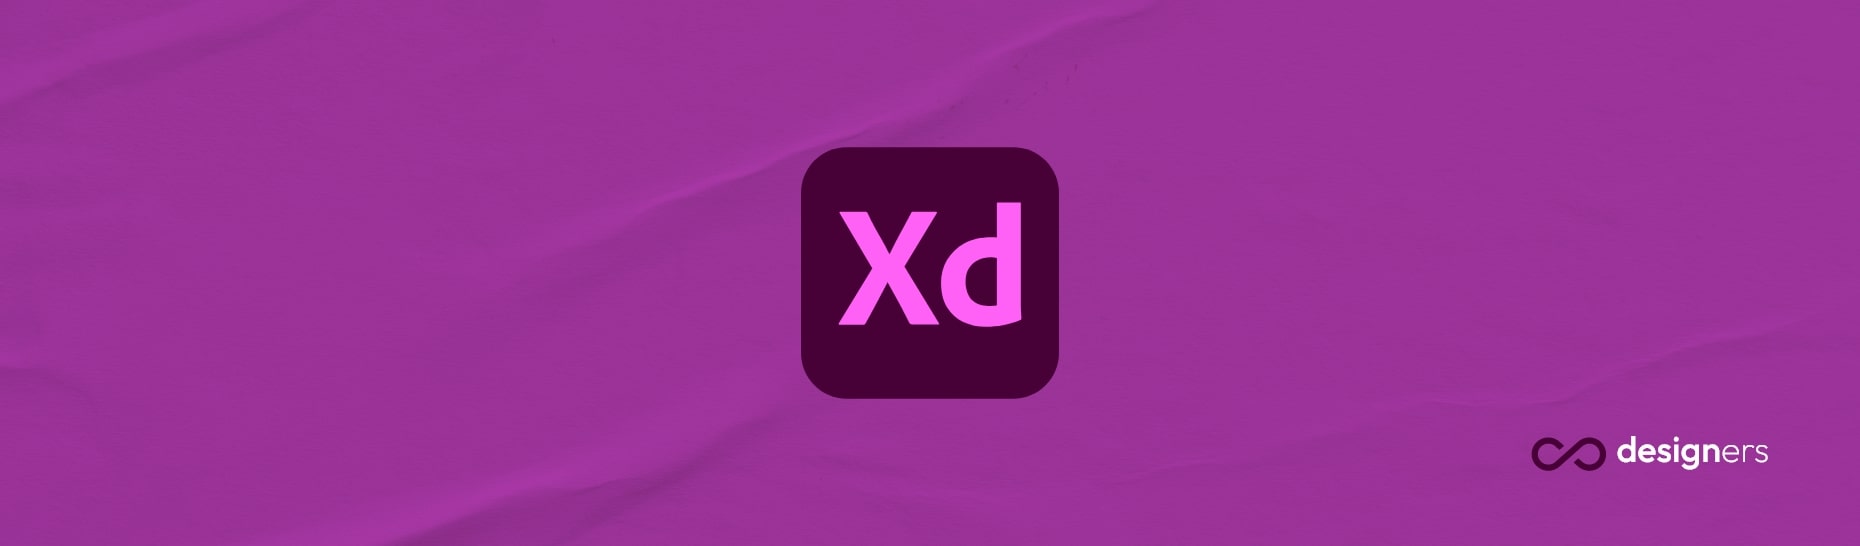 Is Adobe XD safe?